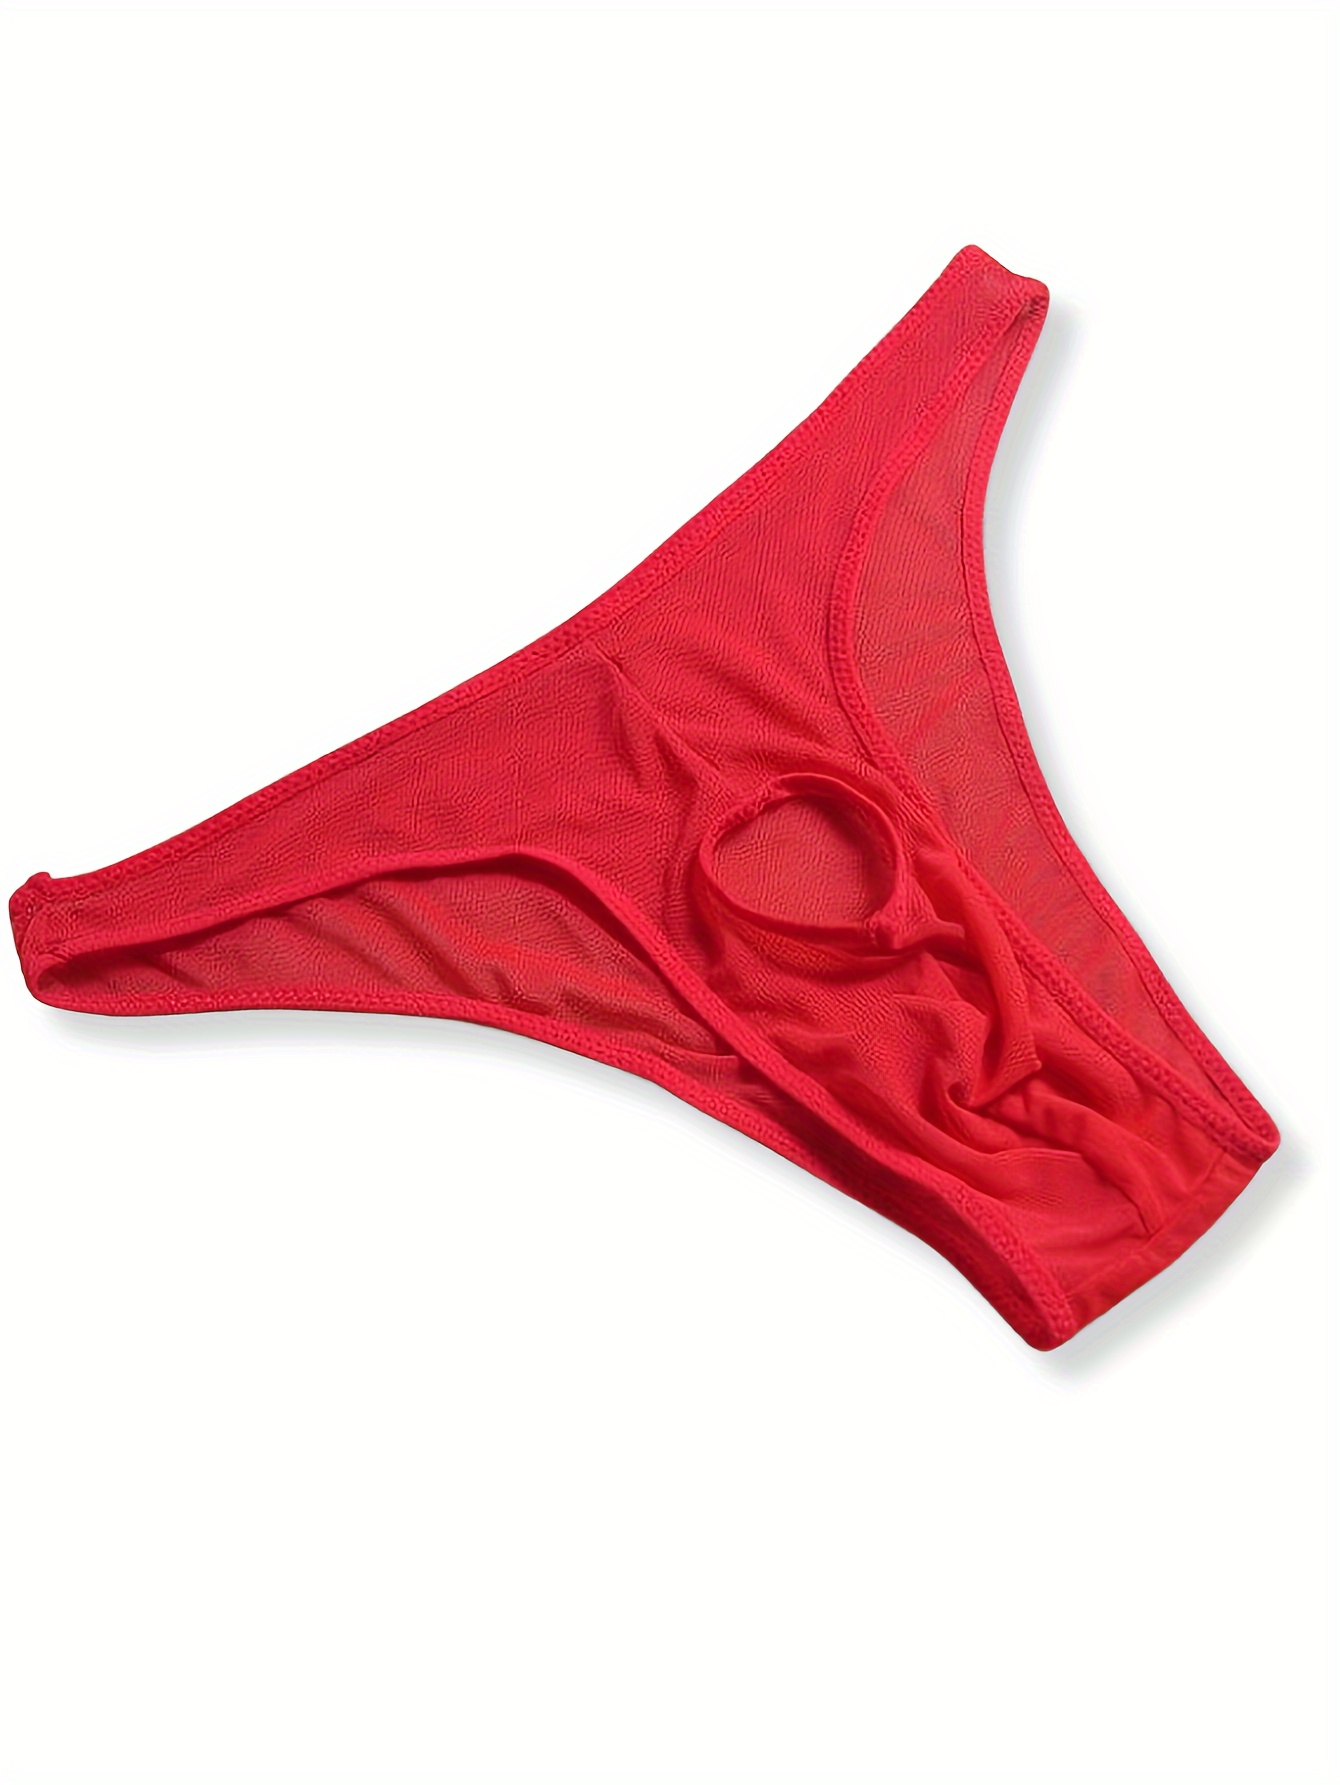 Penis Pouch Hole Underwear Open Front Panties Sexy Lingerie Men Mesh Briefs